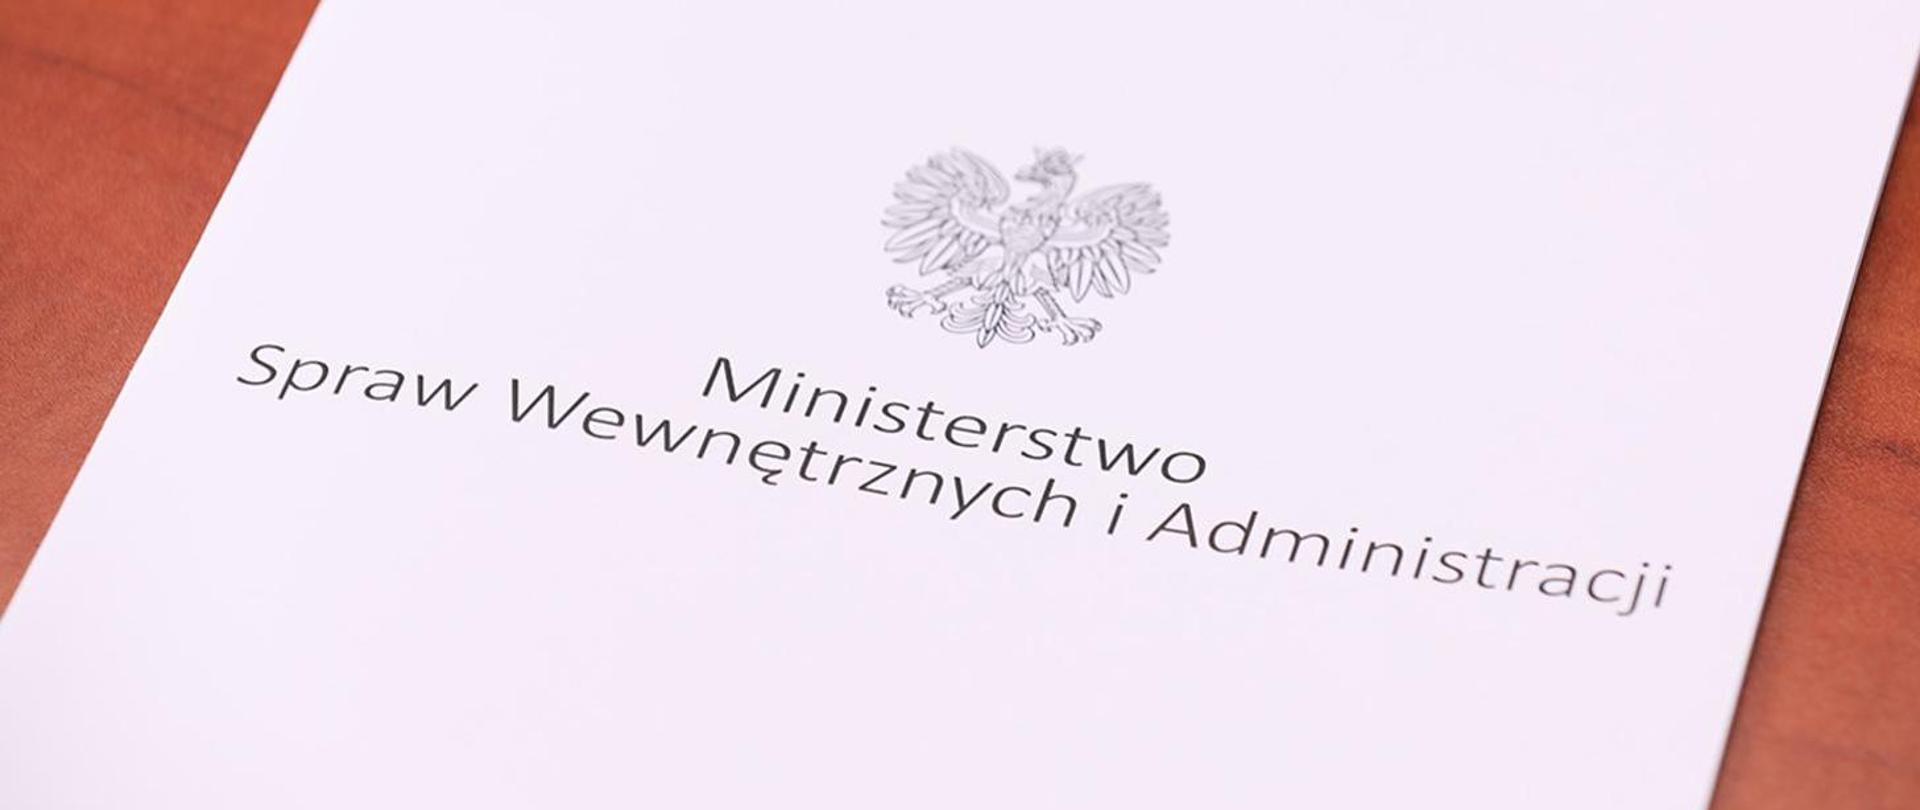 Zdjęcie zawiera teczkę na dokumenty z Napisem Ministerstwo Spraw Wewnętrznych i Administracji oraz Godło Państwowe.